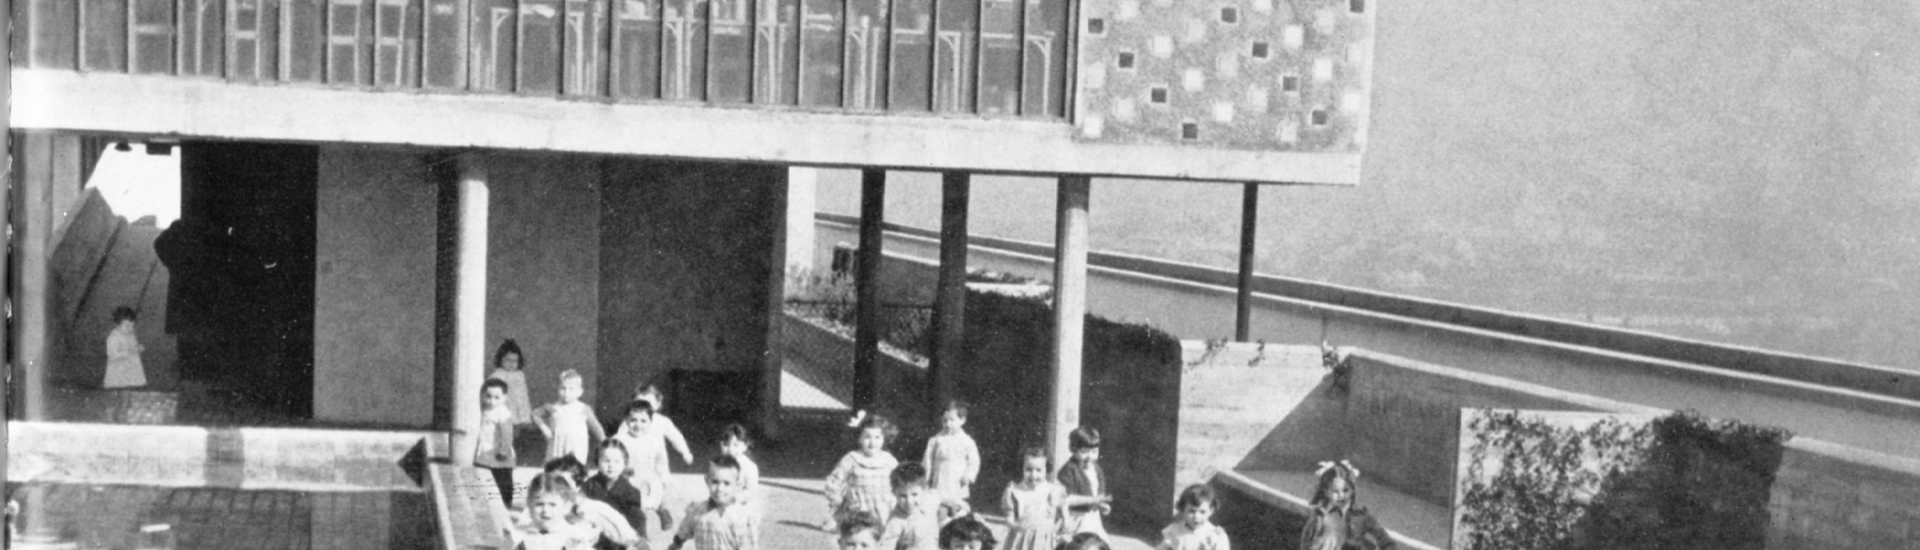 Les enfants de l'école maternelle de l'Unité d'Habitation de Marseille © Louis Sciarli - Archives municipales de Marseille 47 Fi 534 © FLC - ADAGP